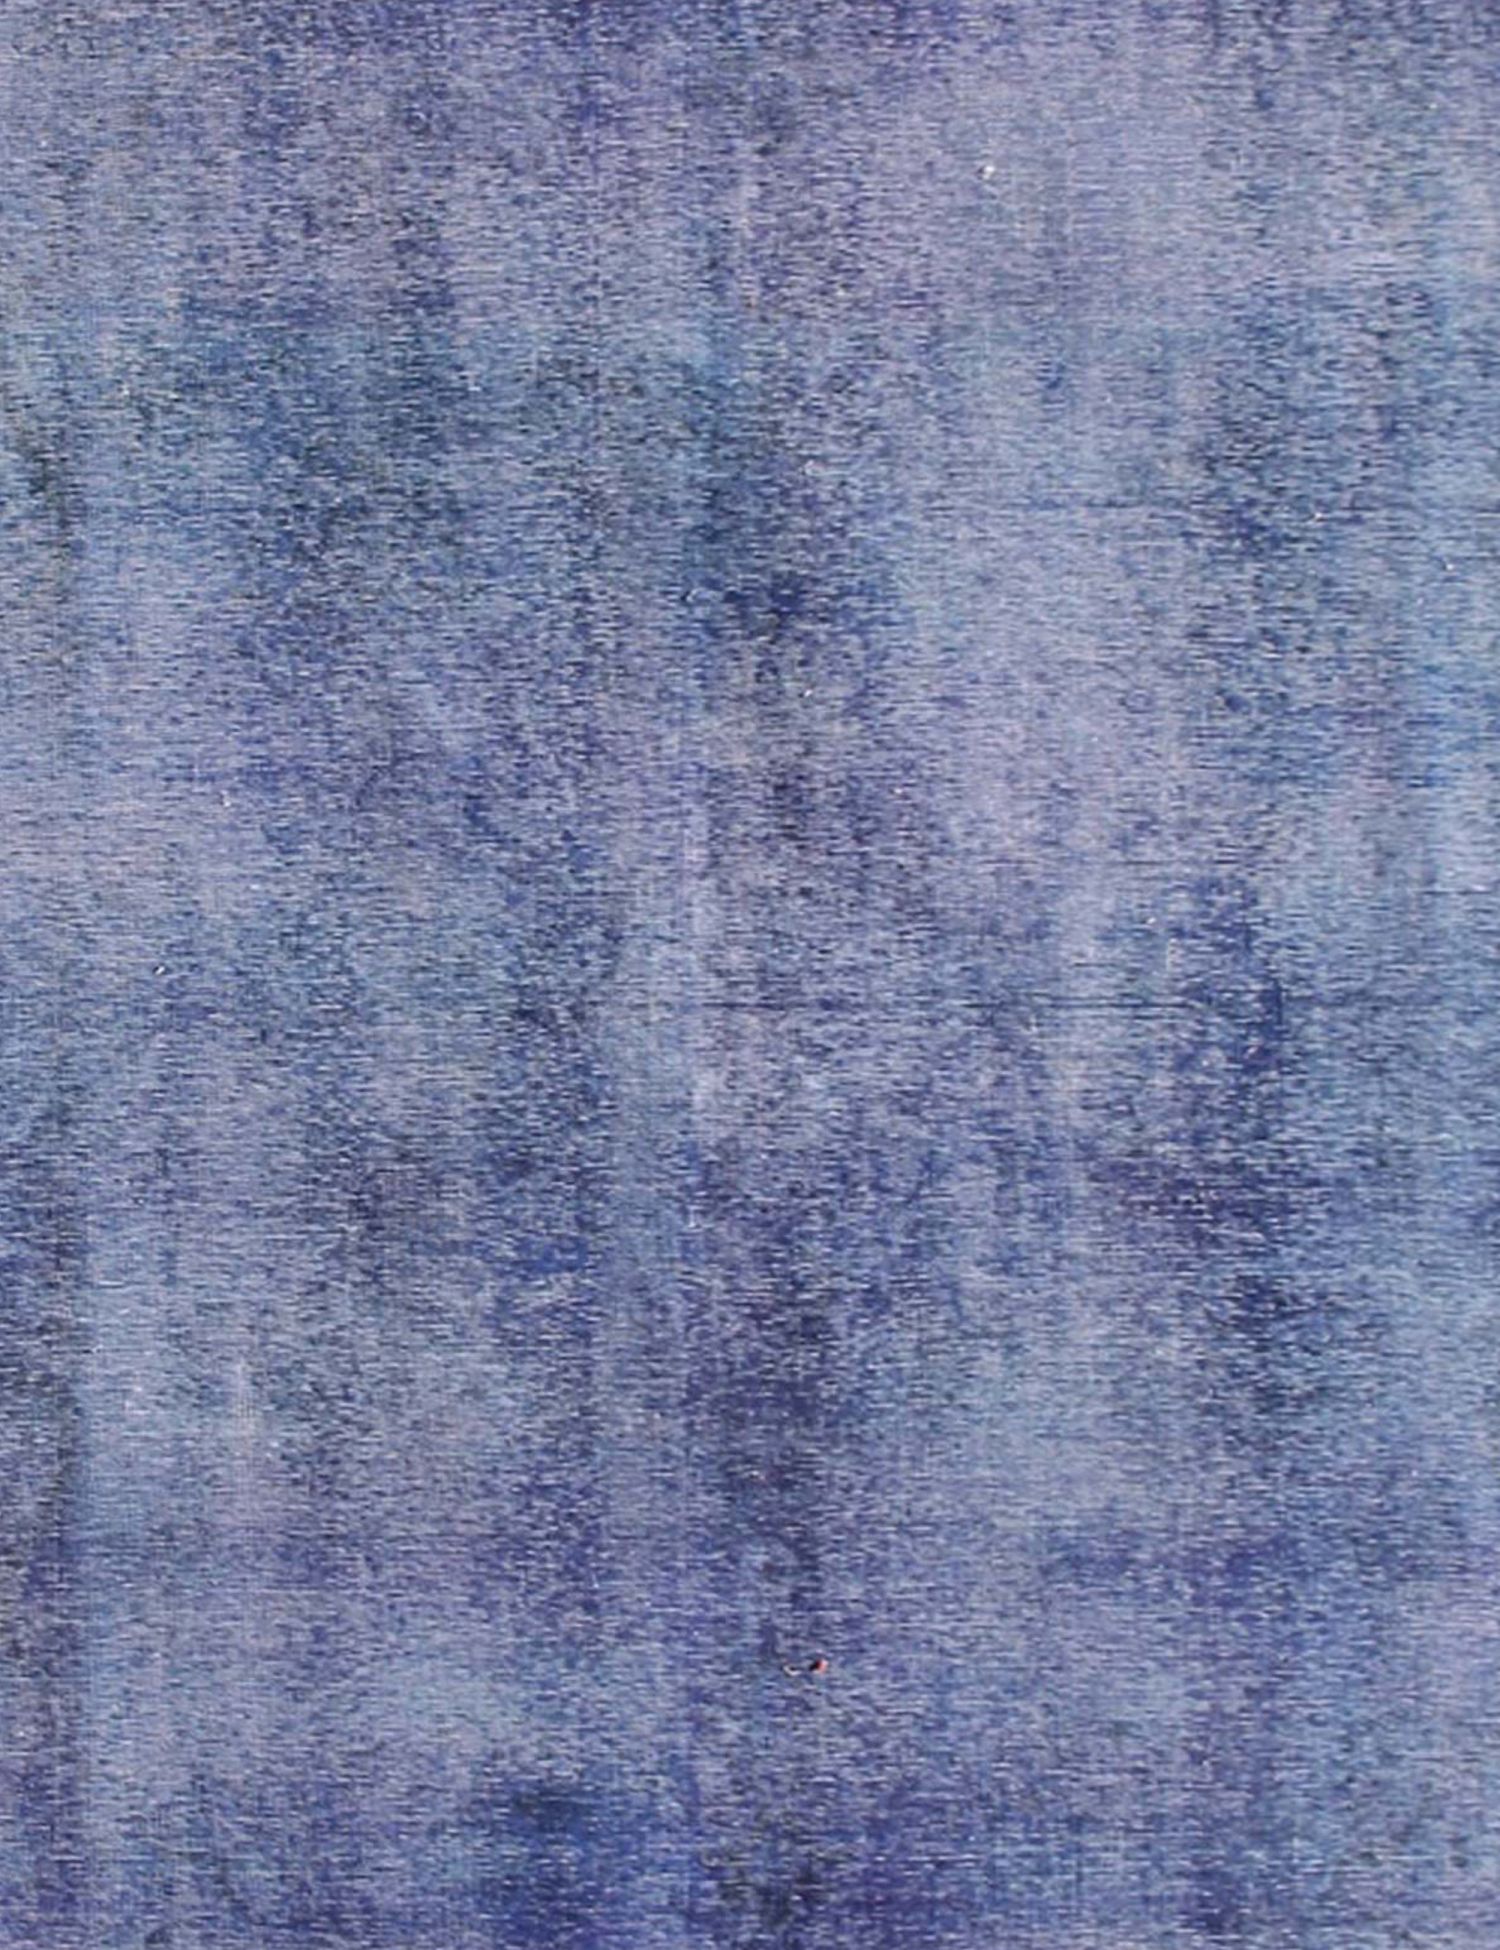 Persischer Vintage Teppich  blau <br/>260 x 200 cm